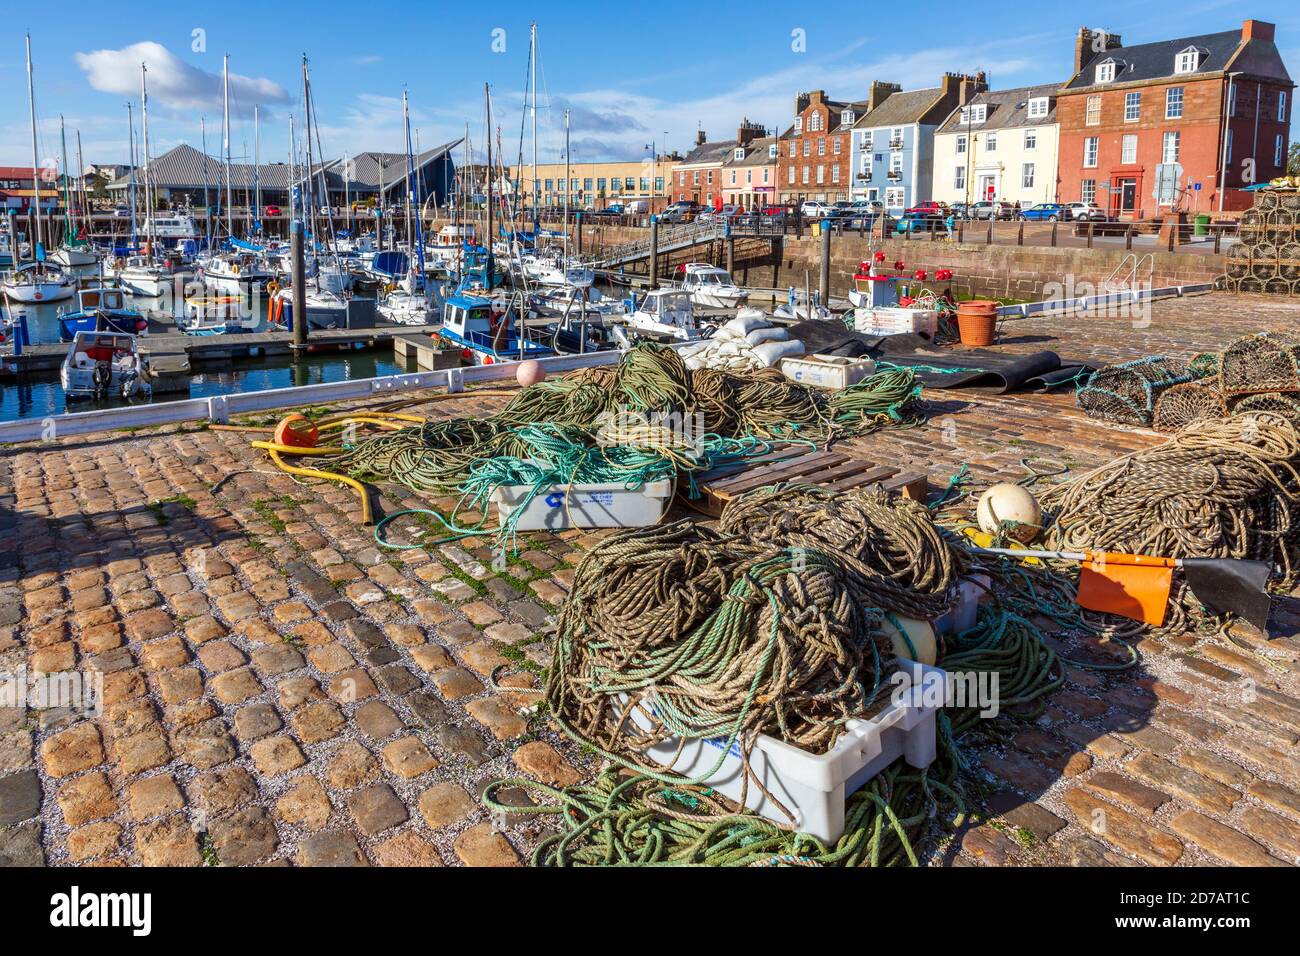 Cordes, flotteurs de pêche et caisses à poissons sur le quai, surplombant la marina d'Arbroath, Angus, Écosse, Royaume-Uni Banque D'Images